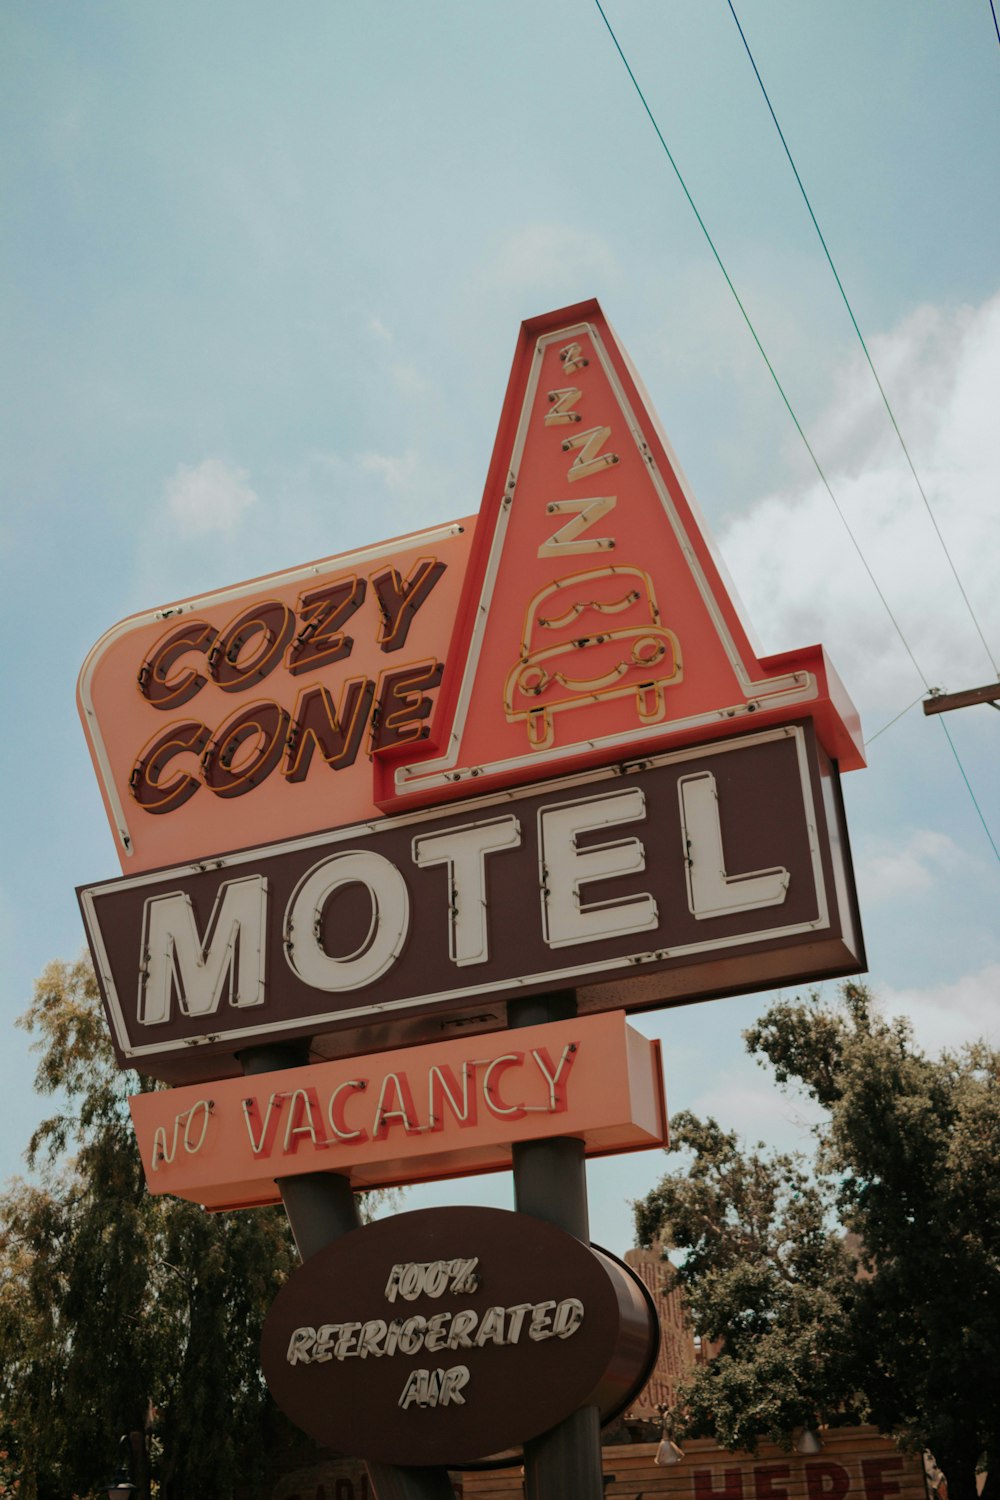 Panneau de signalisation Cozy Cone Motel